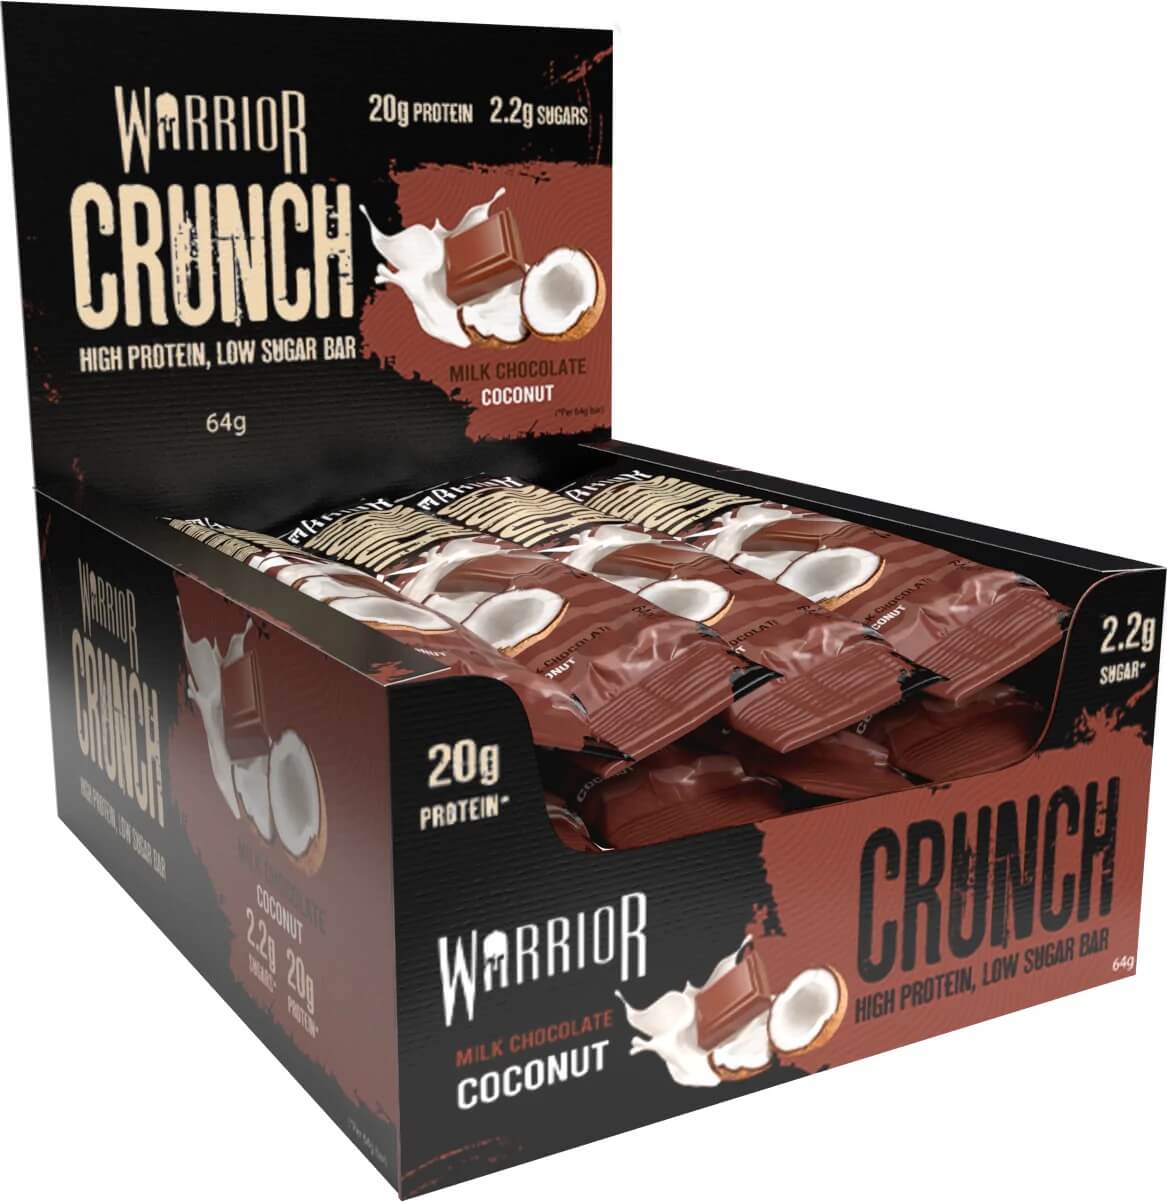 Warrior Crunch Proteinbar - Milk Chocolate Coconut 64g x 12st